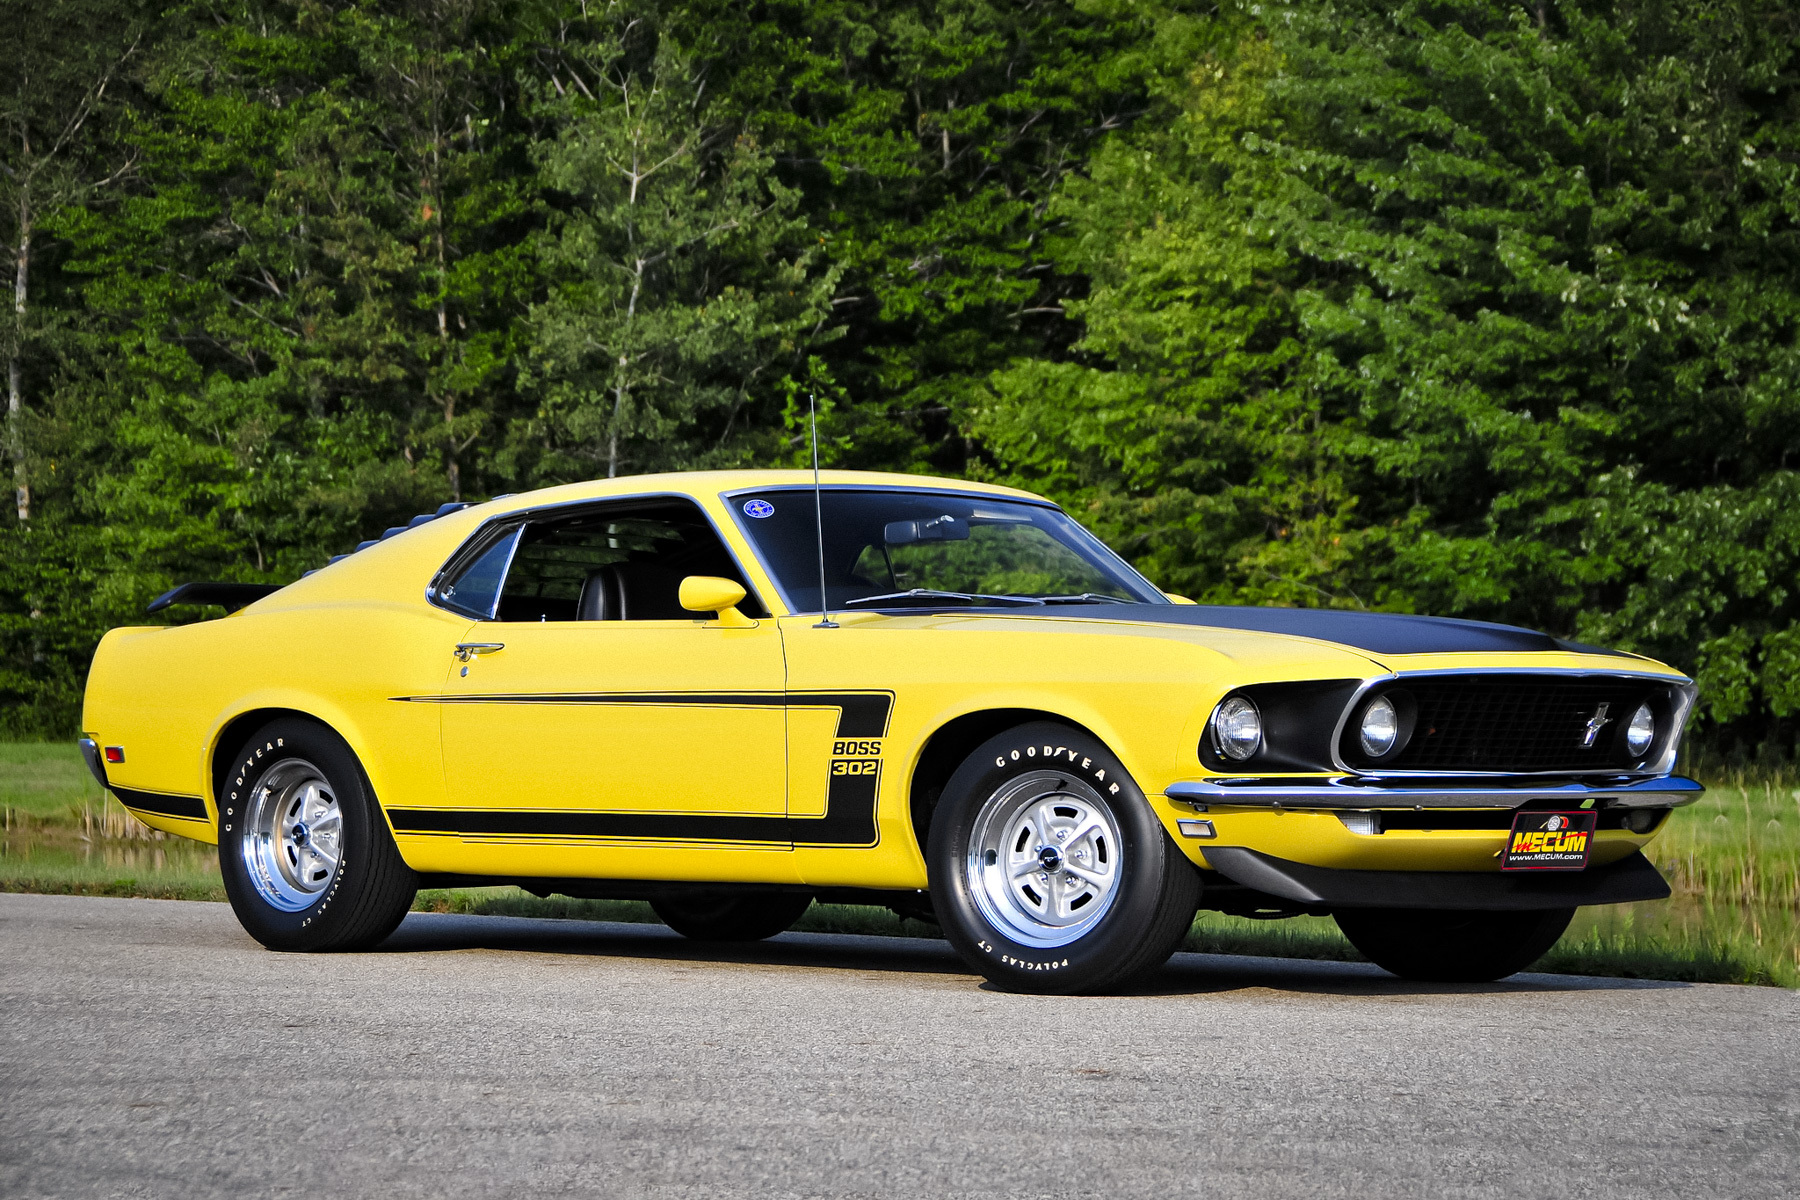 Ford Mustang Boss 302 1969 года. Он довольно далеко ушел от «стройного» исходника 1964–1965 года. Из-за самого названия «Ford Mustang II» все Мустанги, выпущенные до 1973 года нередко причисляют к первому поколению. Но это как минимум не вполне точно. Ниже вы увидите, каким огромным стал Mustang и как мало он был похож на оригинальную модель. Словом, тревожные трансформации иконы начались задолго до Mustang II